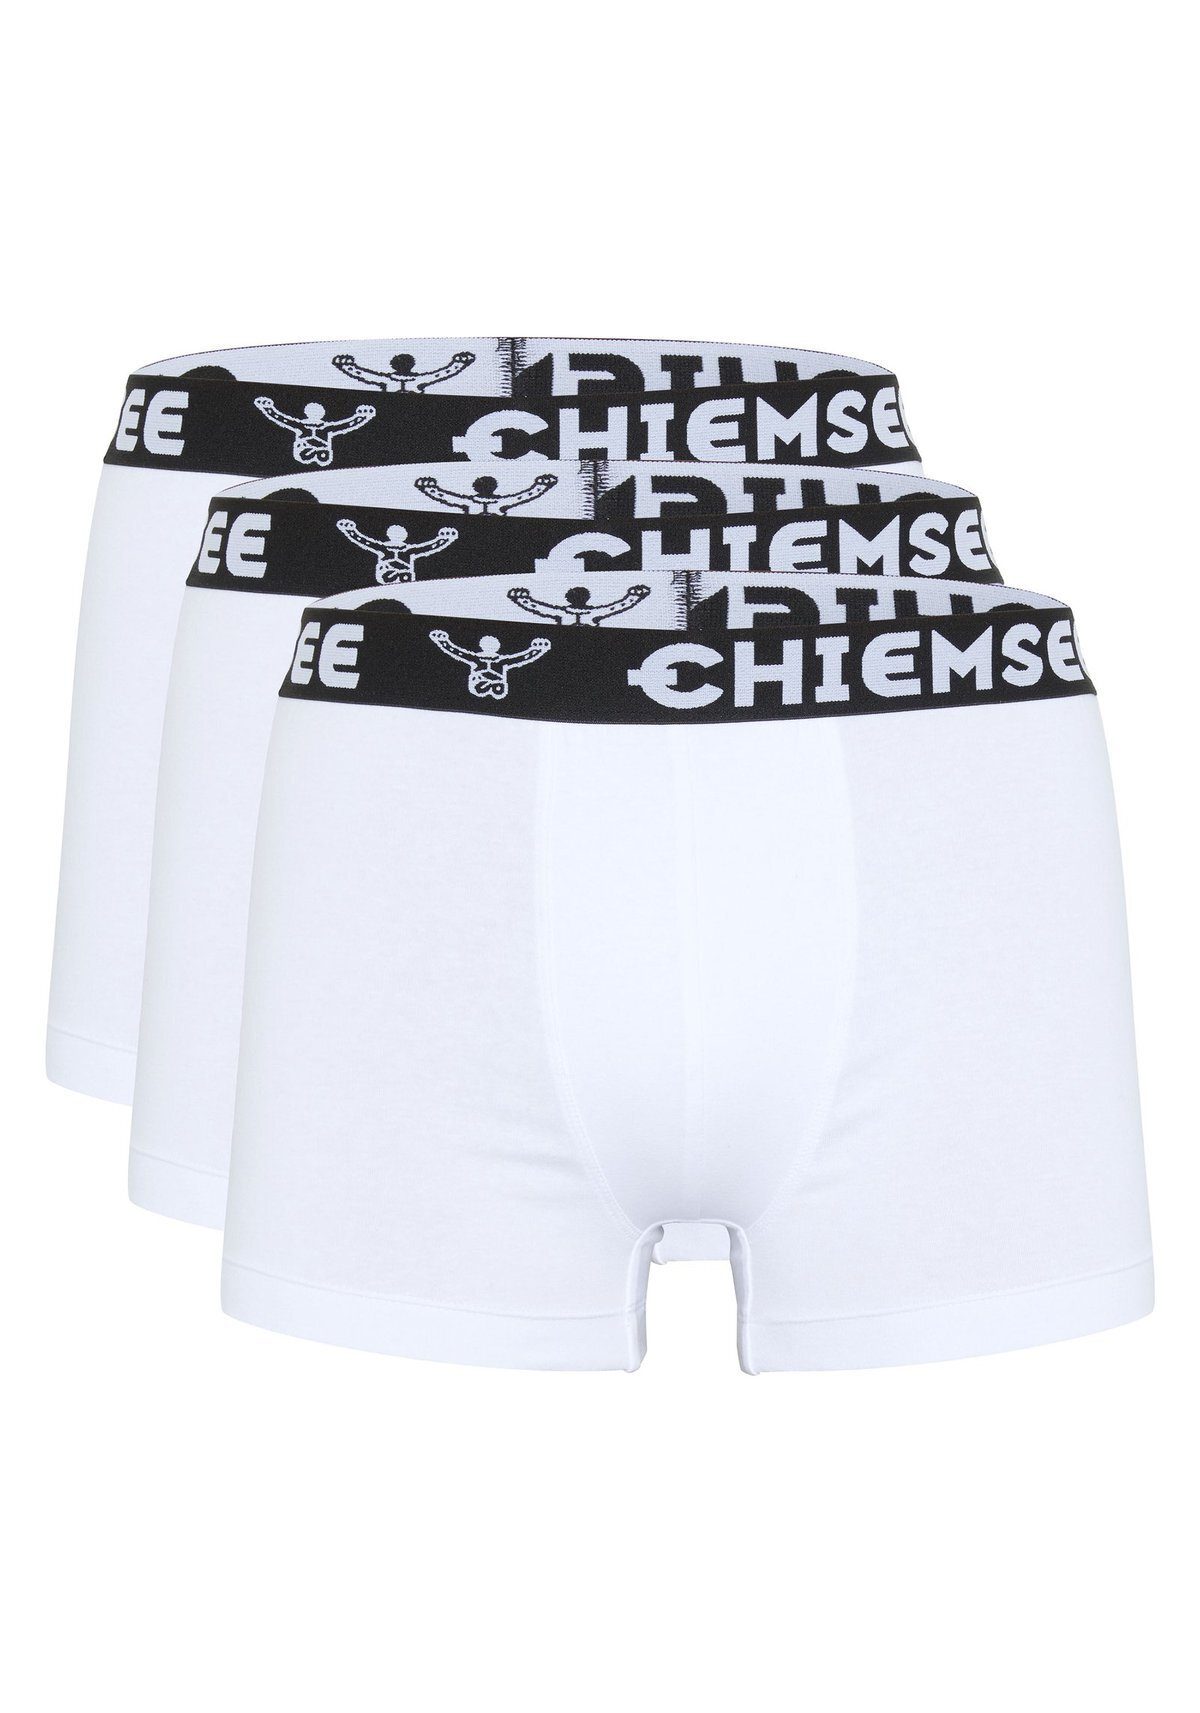 Chiemsee Boxer Herren Boxershorts, 3er Pack - Shorts, Logobund